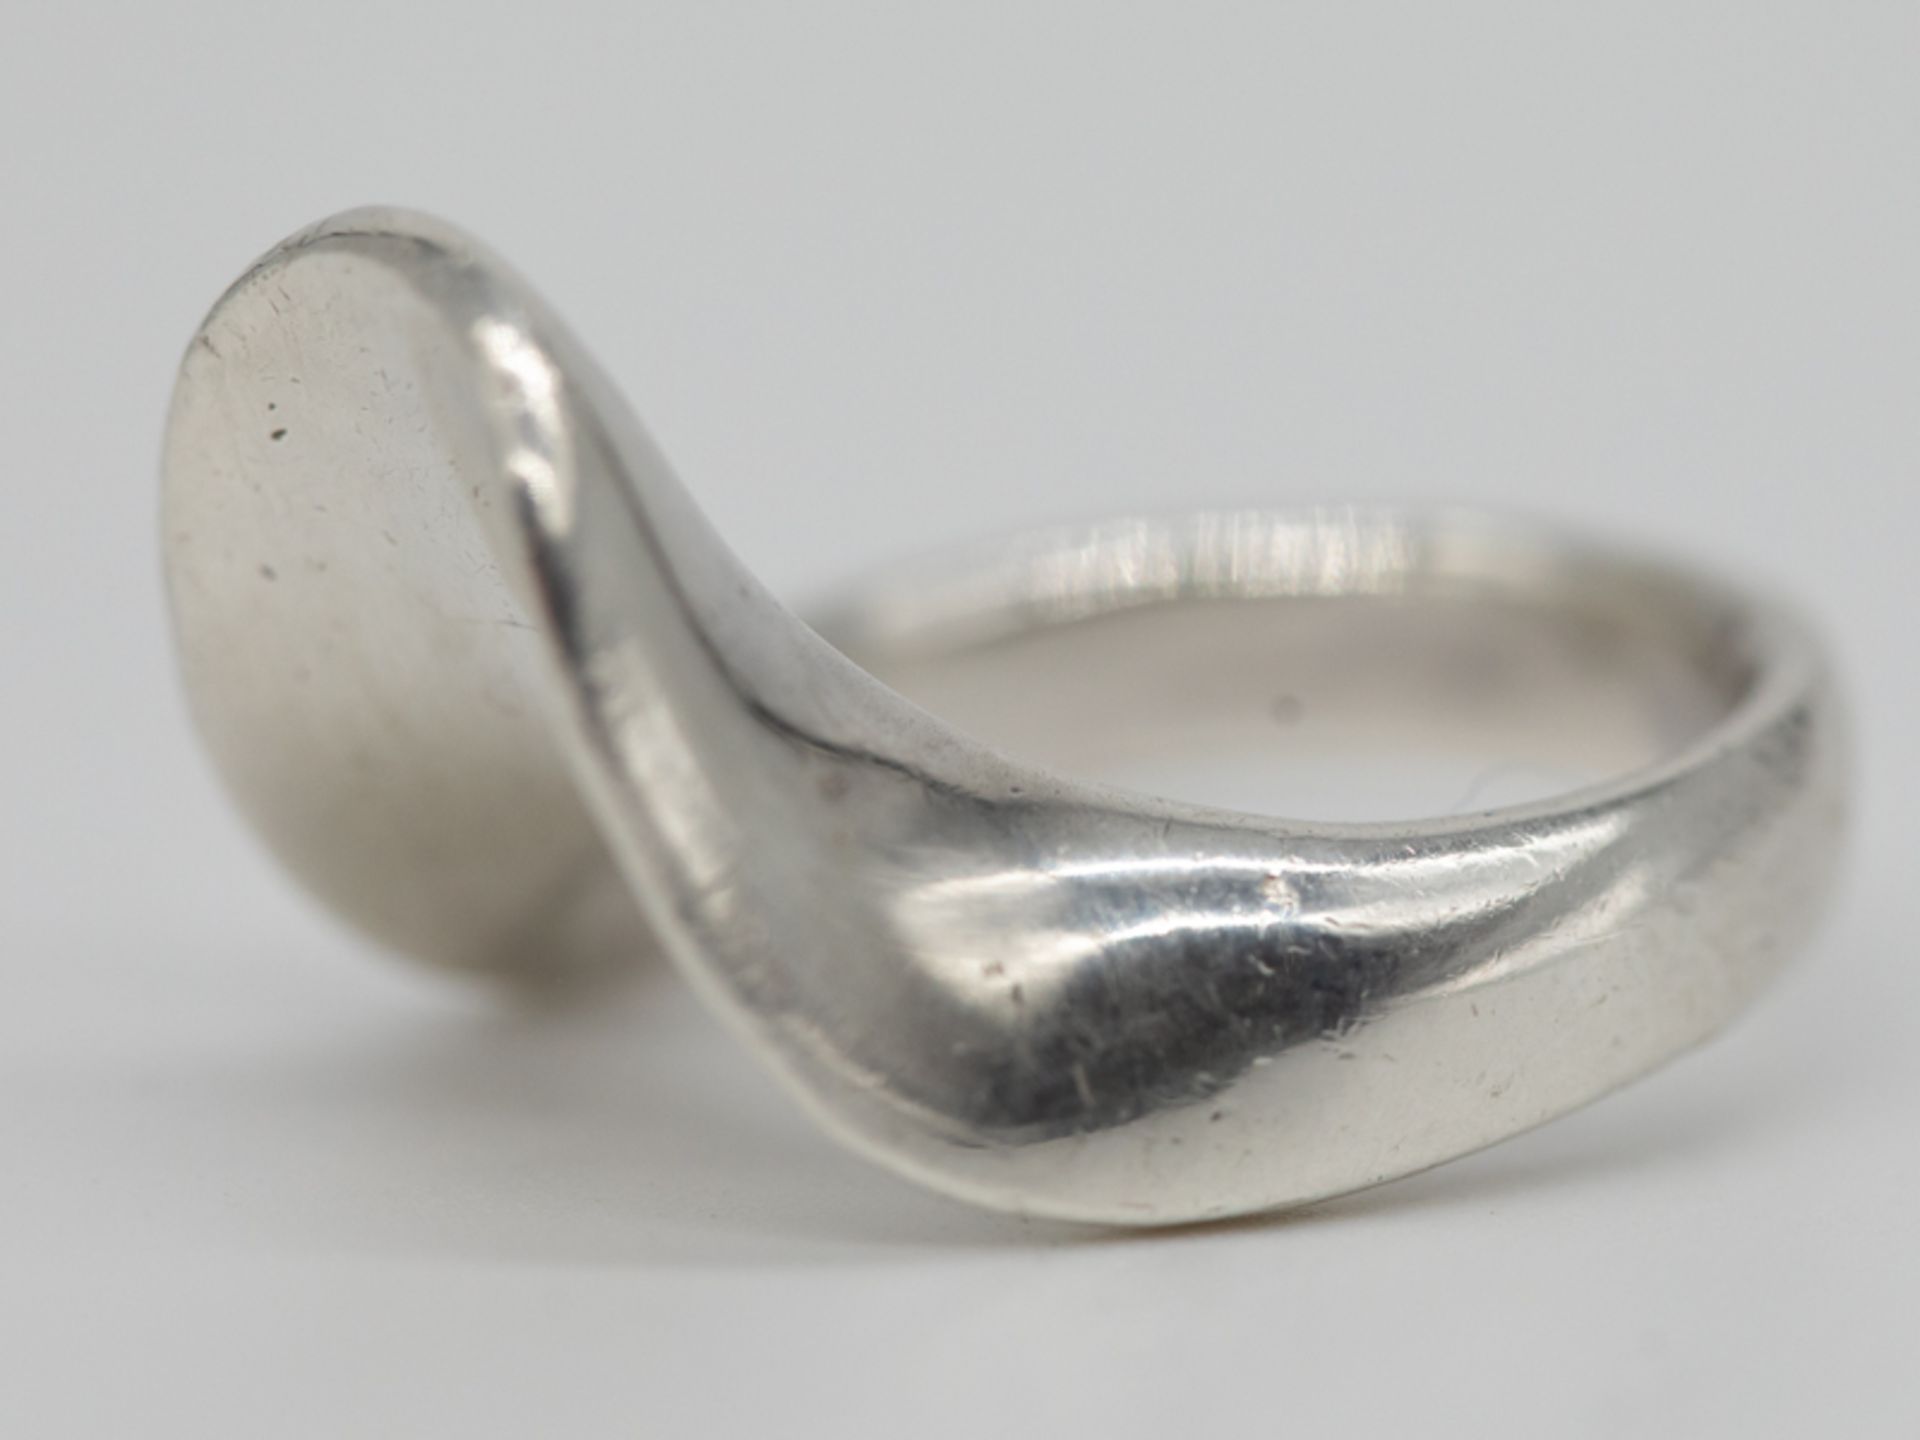 Ring in modernem Design, Alain Duclos, Frankreich, 1970er Jahre. 950/-Silber, ca. 10g; massiv - Bild 6 aus 6